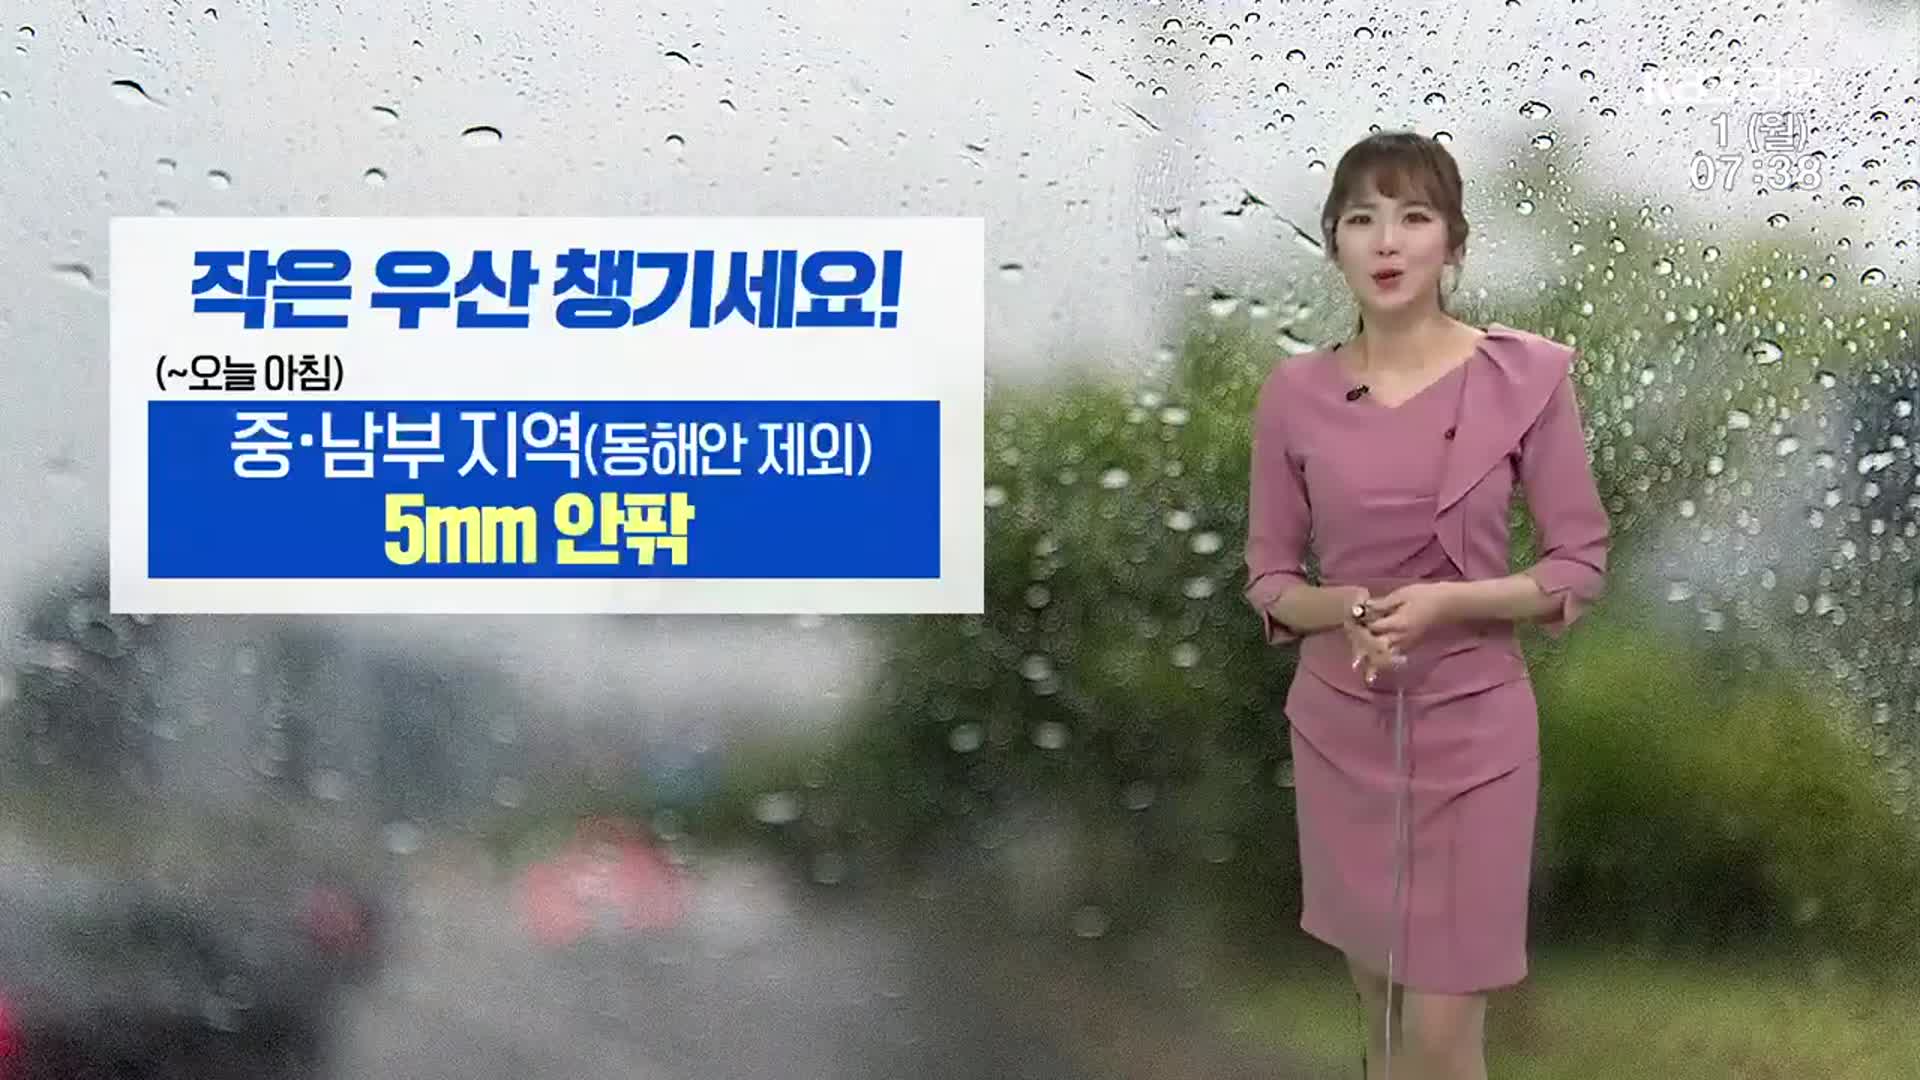 [날씨] “우산 챙기세요”…강원 중·남부 지역 5mm 안팎